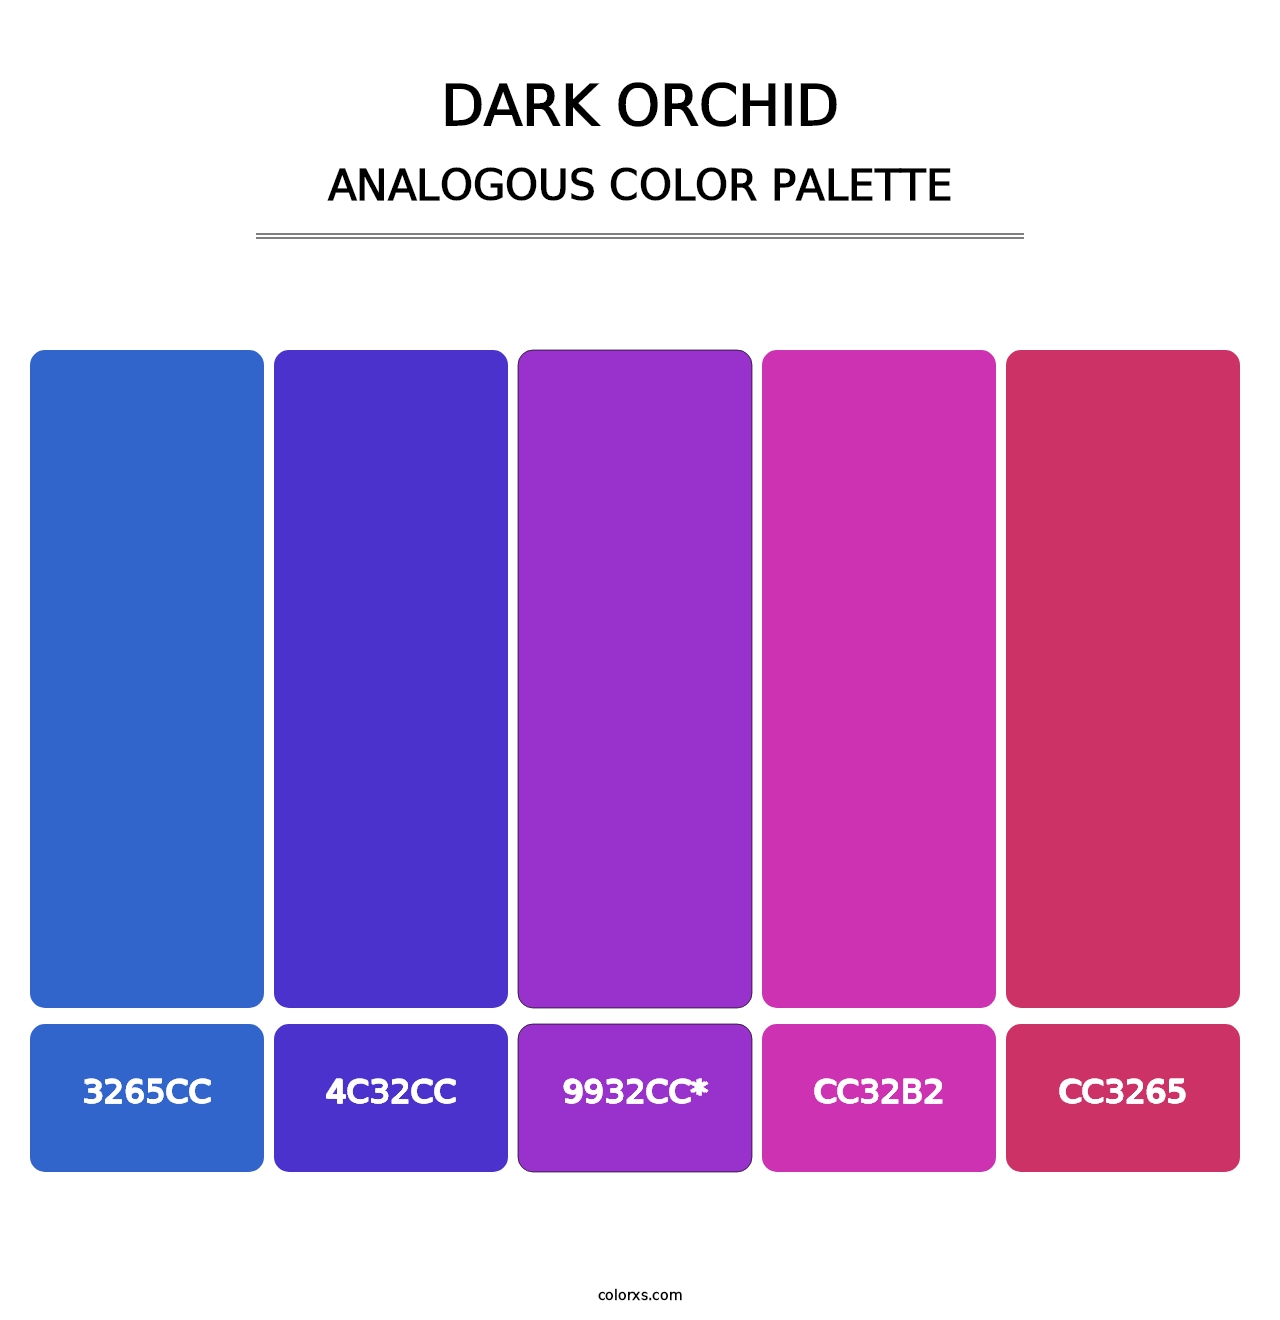 Dark Orchid - Analogous Color Palette